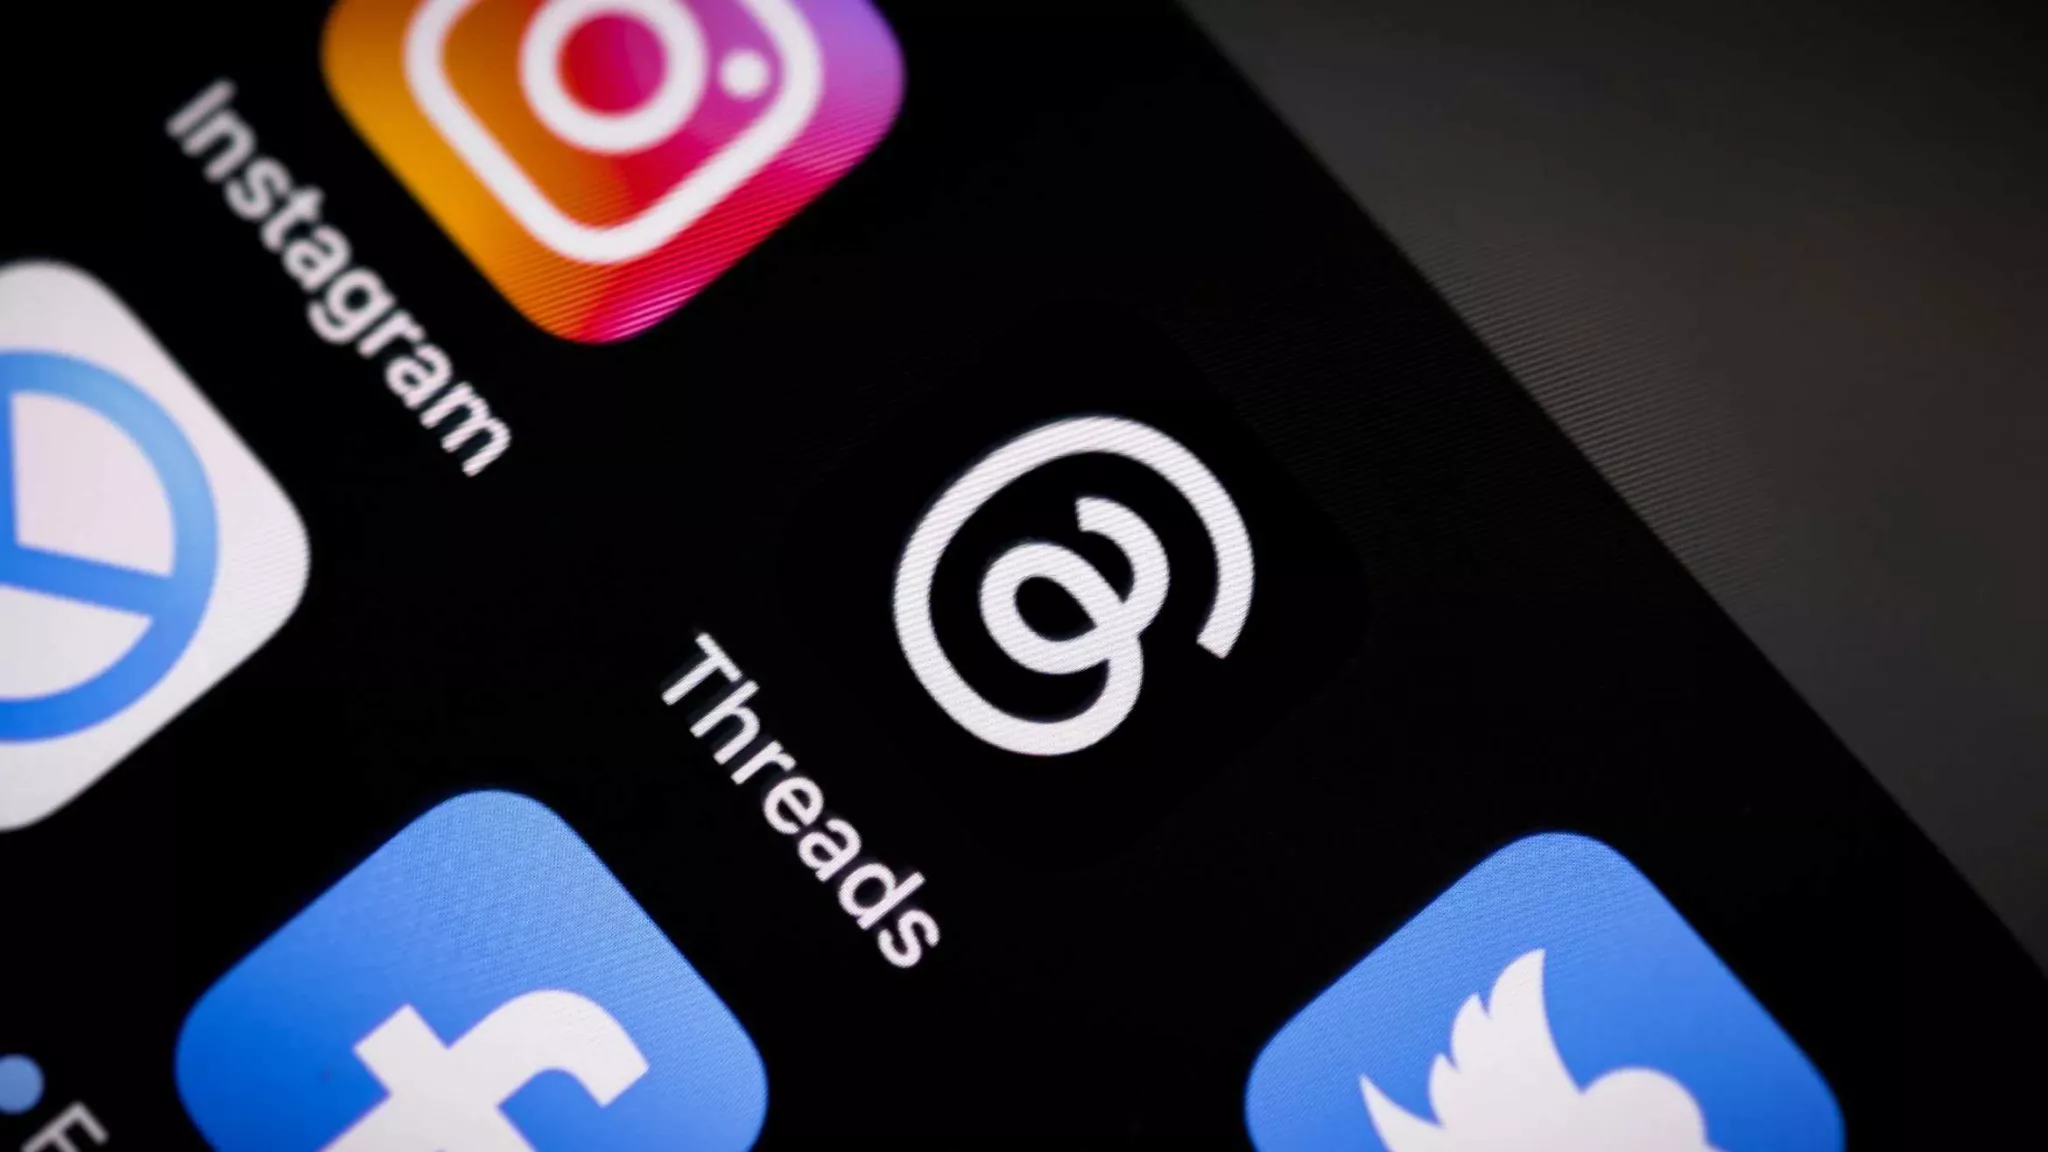 Threads continúa su caída libre, menos usuarios utilizan la app